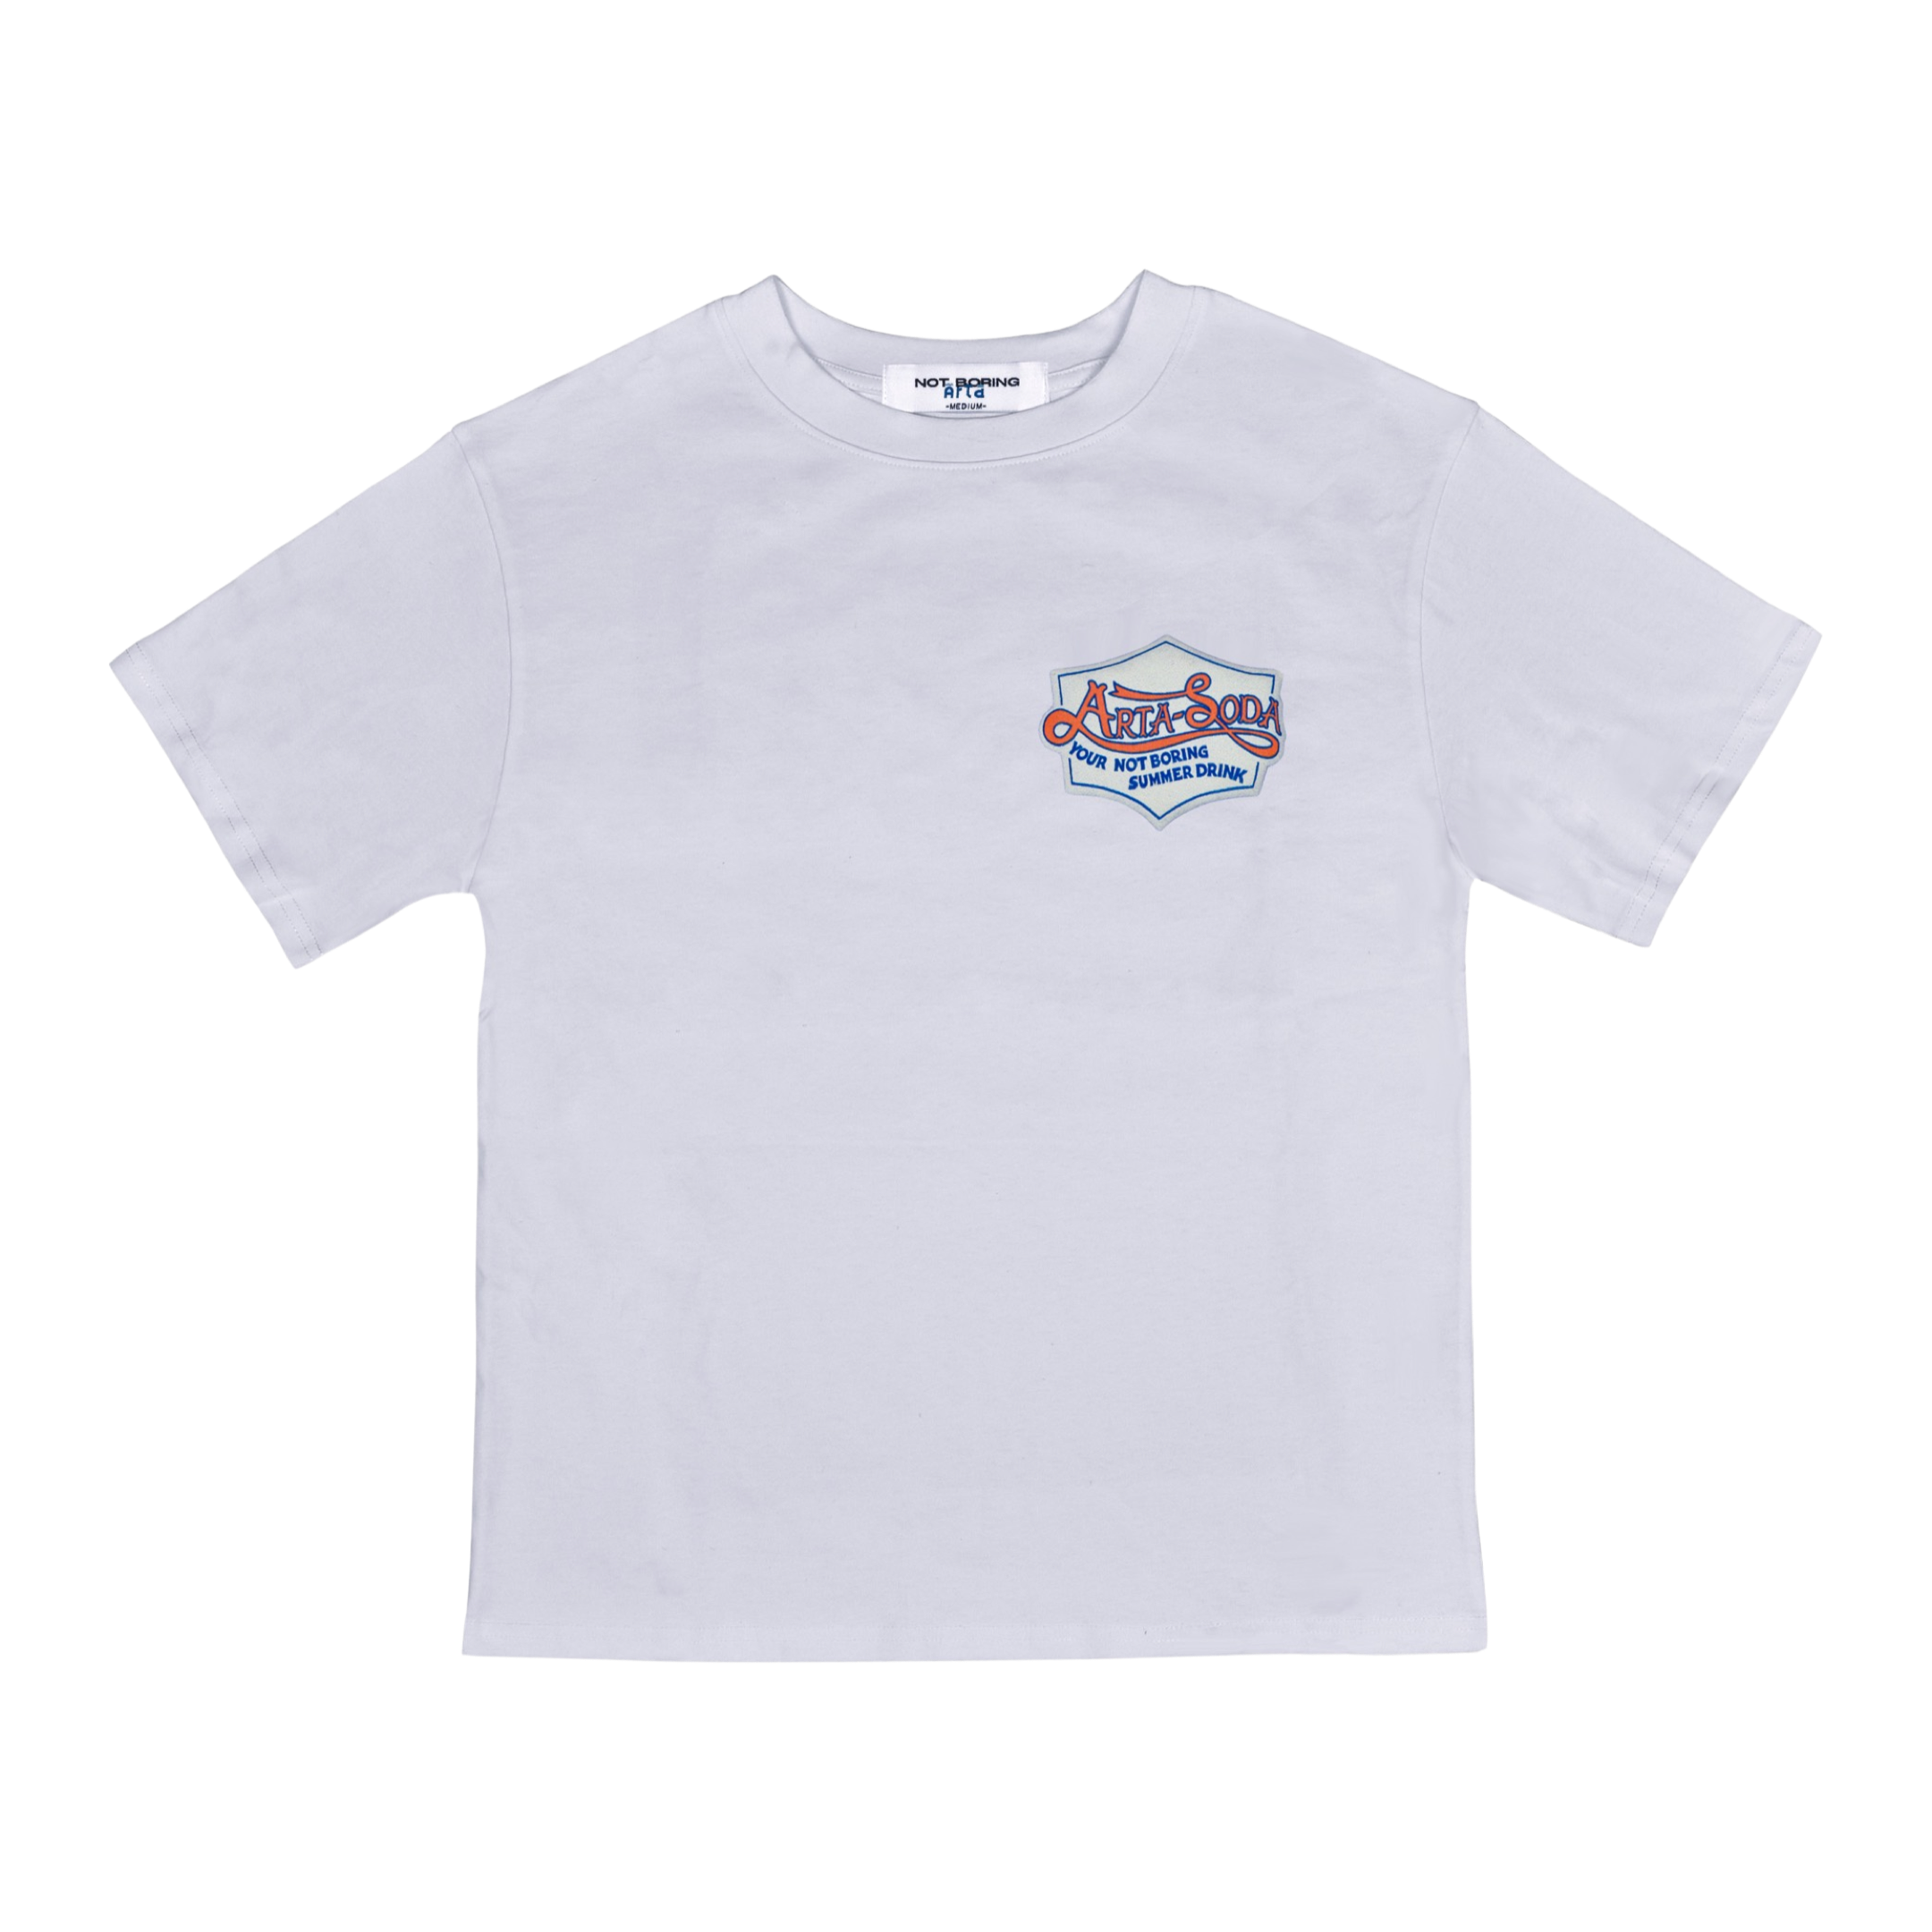 Arta-Soda White T-shirt